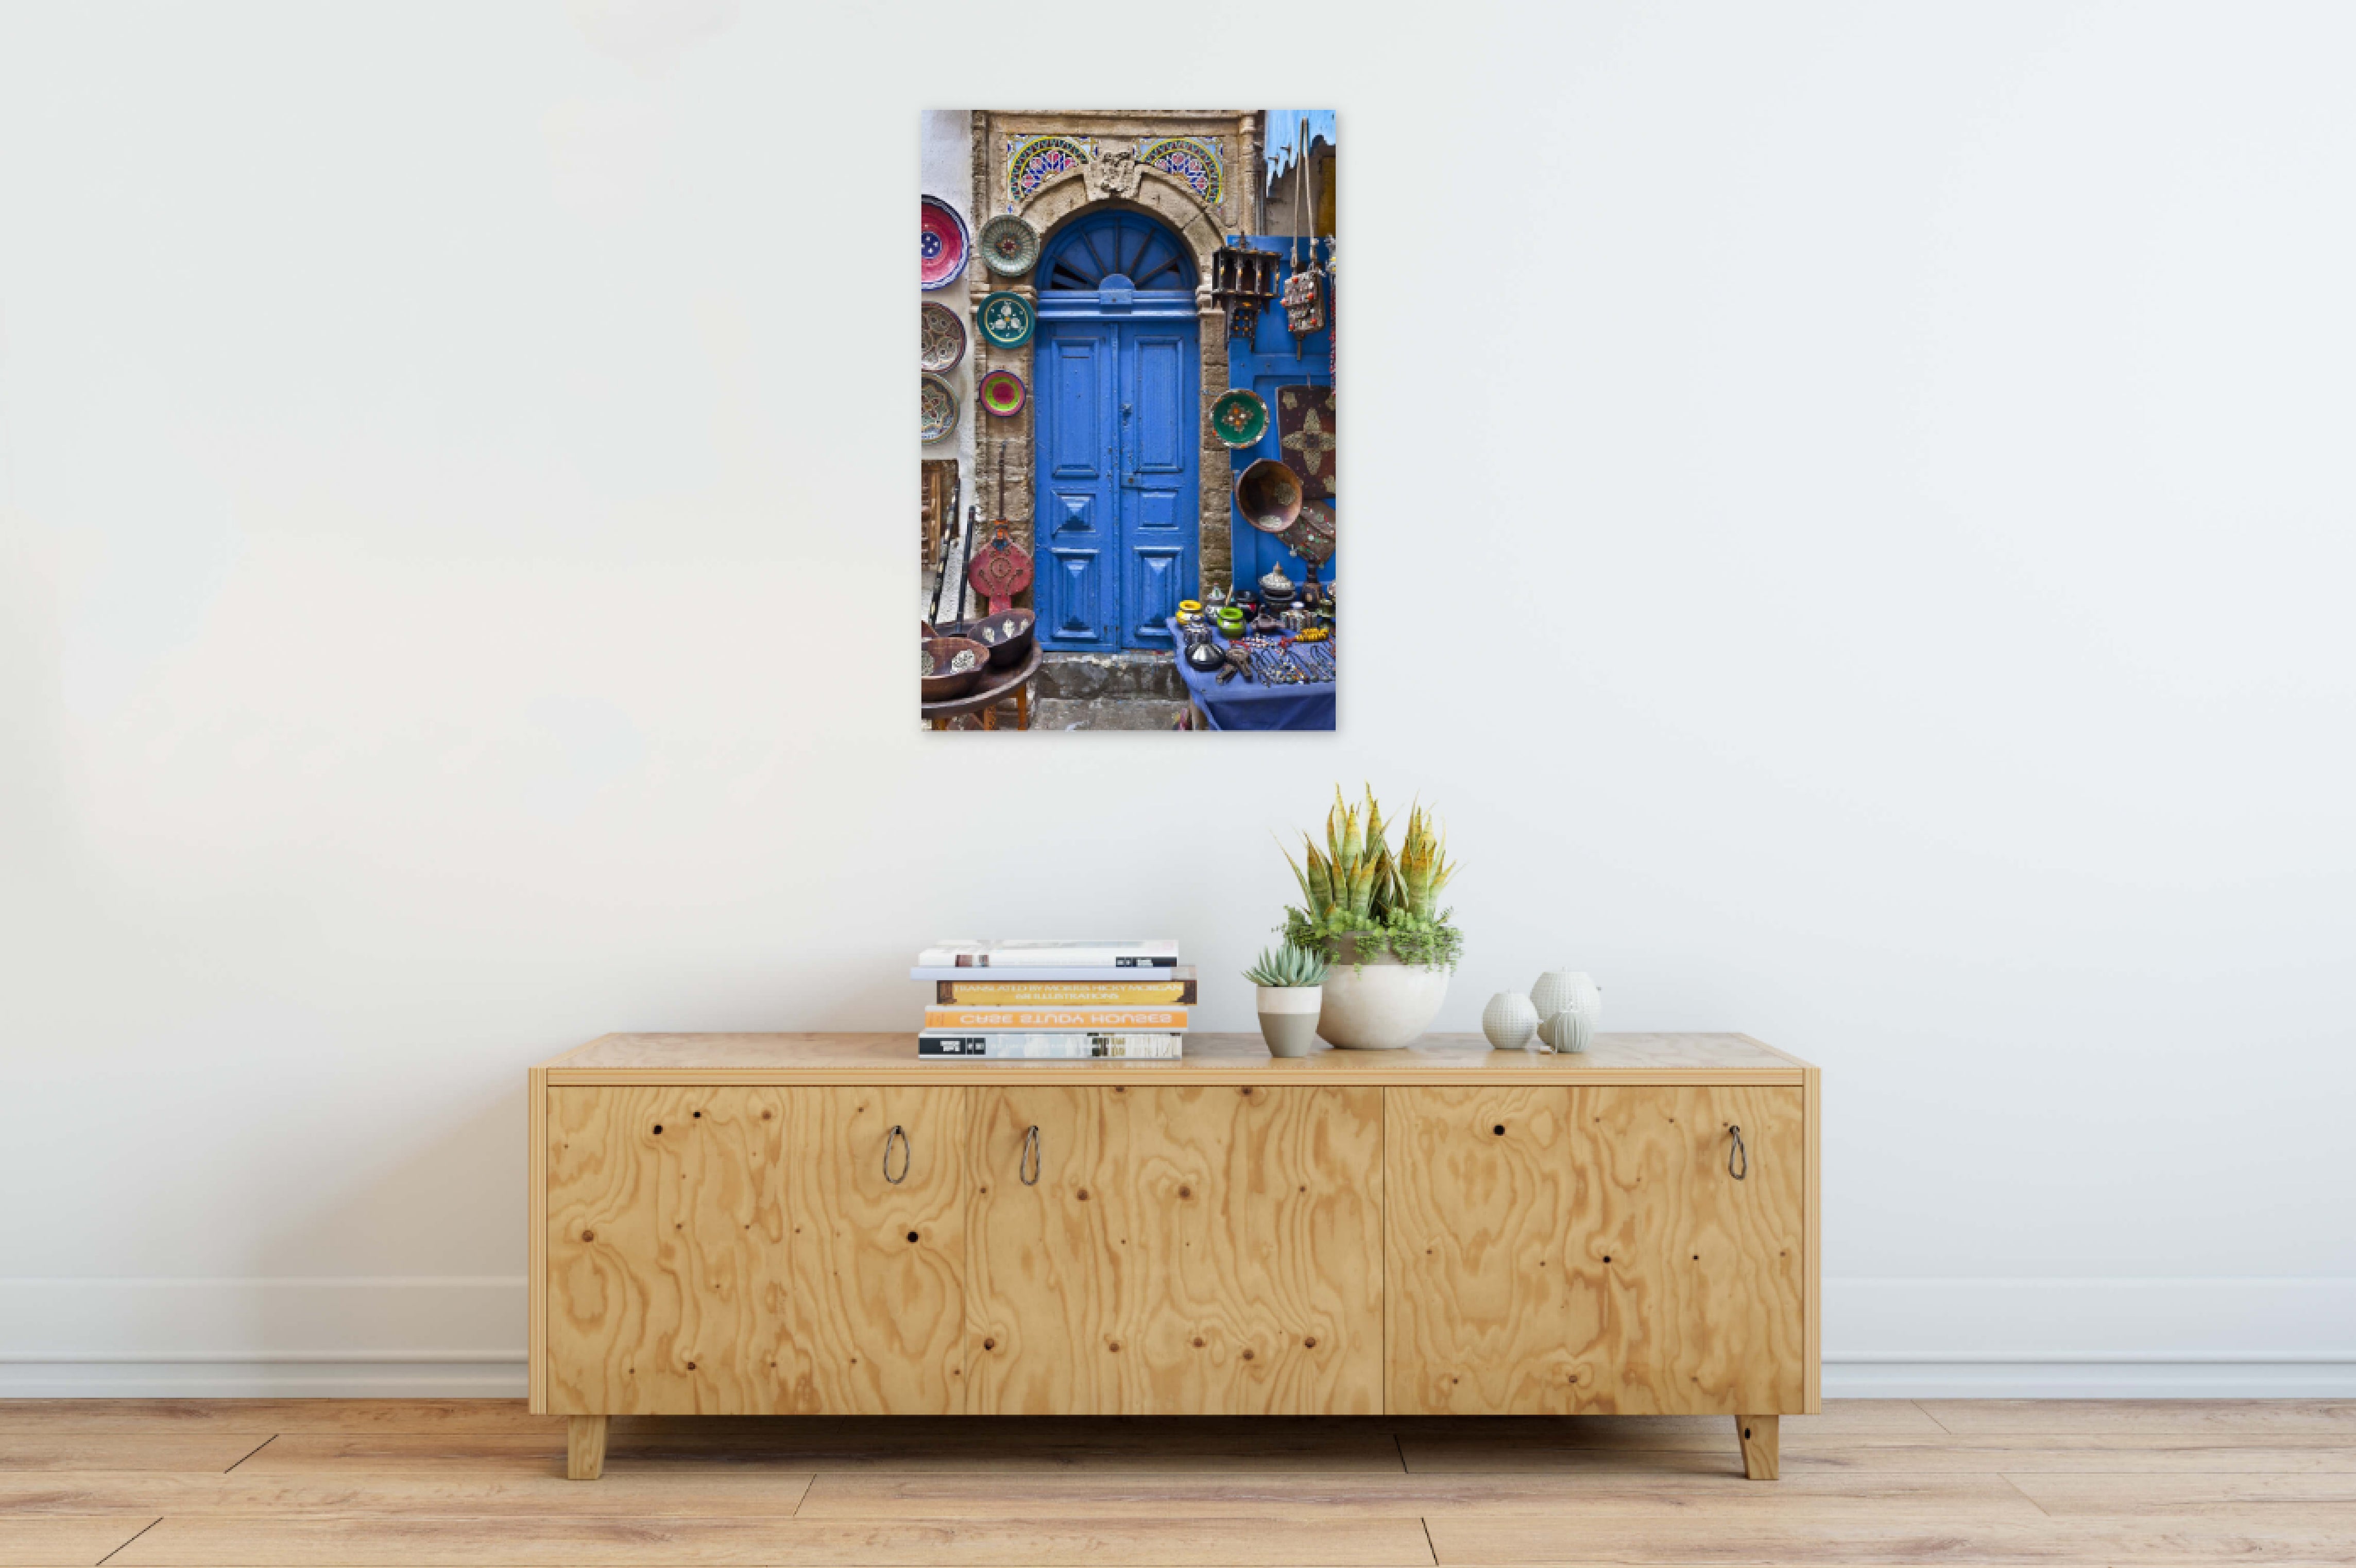 Blue Moroccan Door with Shop 24x36"